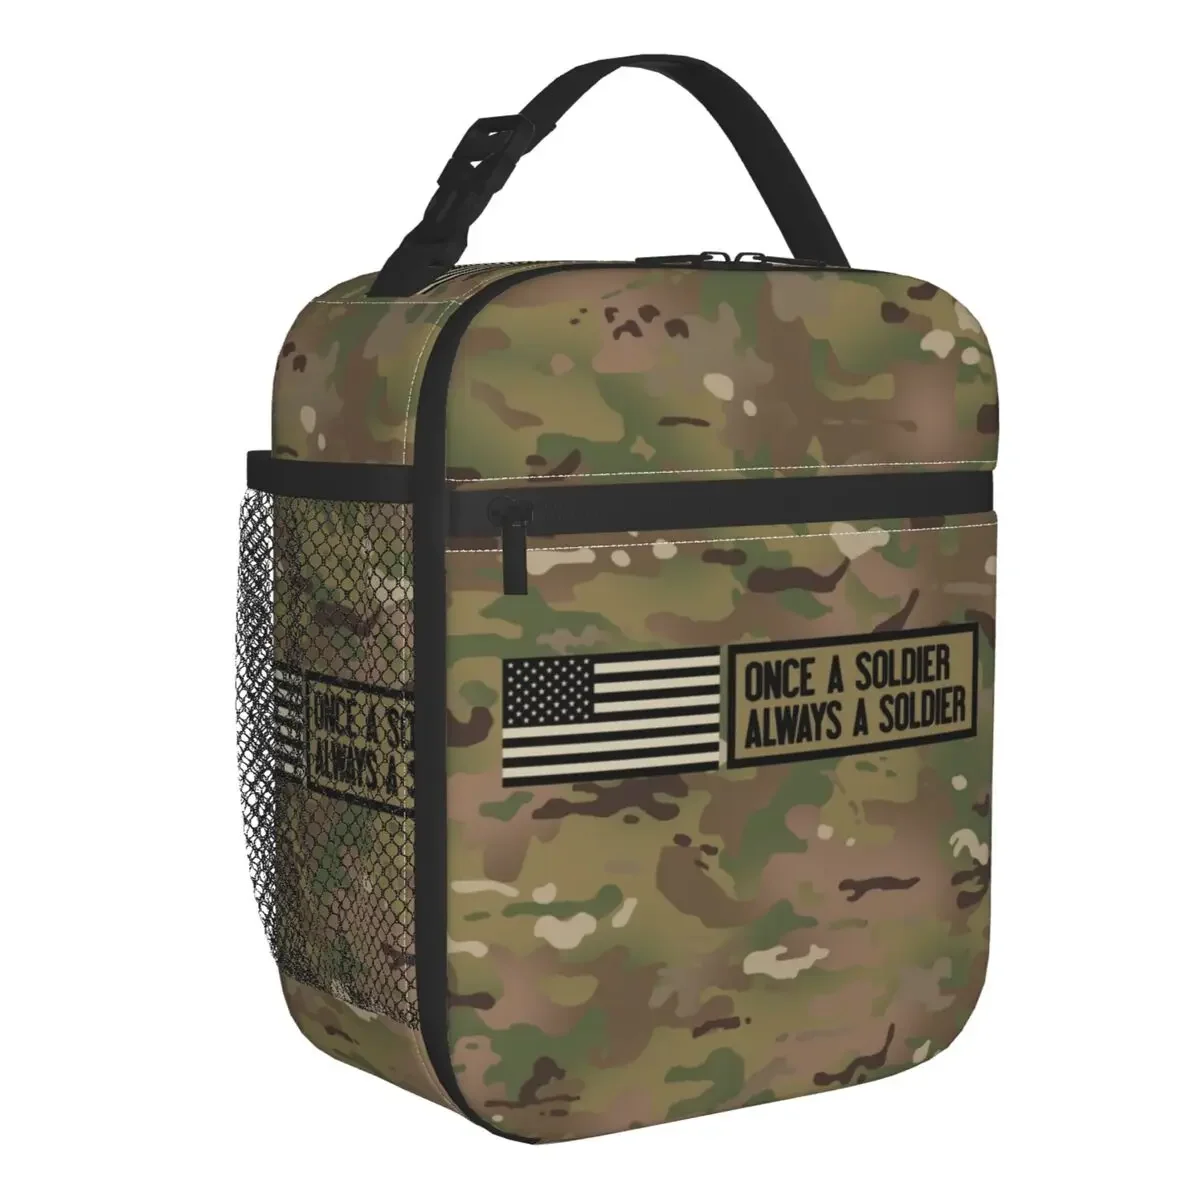 

Один раз солдат всегда солдат изолированная сумка для ланча школьная камуфляжная армейская портативная Термосумка Bento коробка для детей